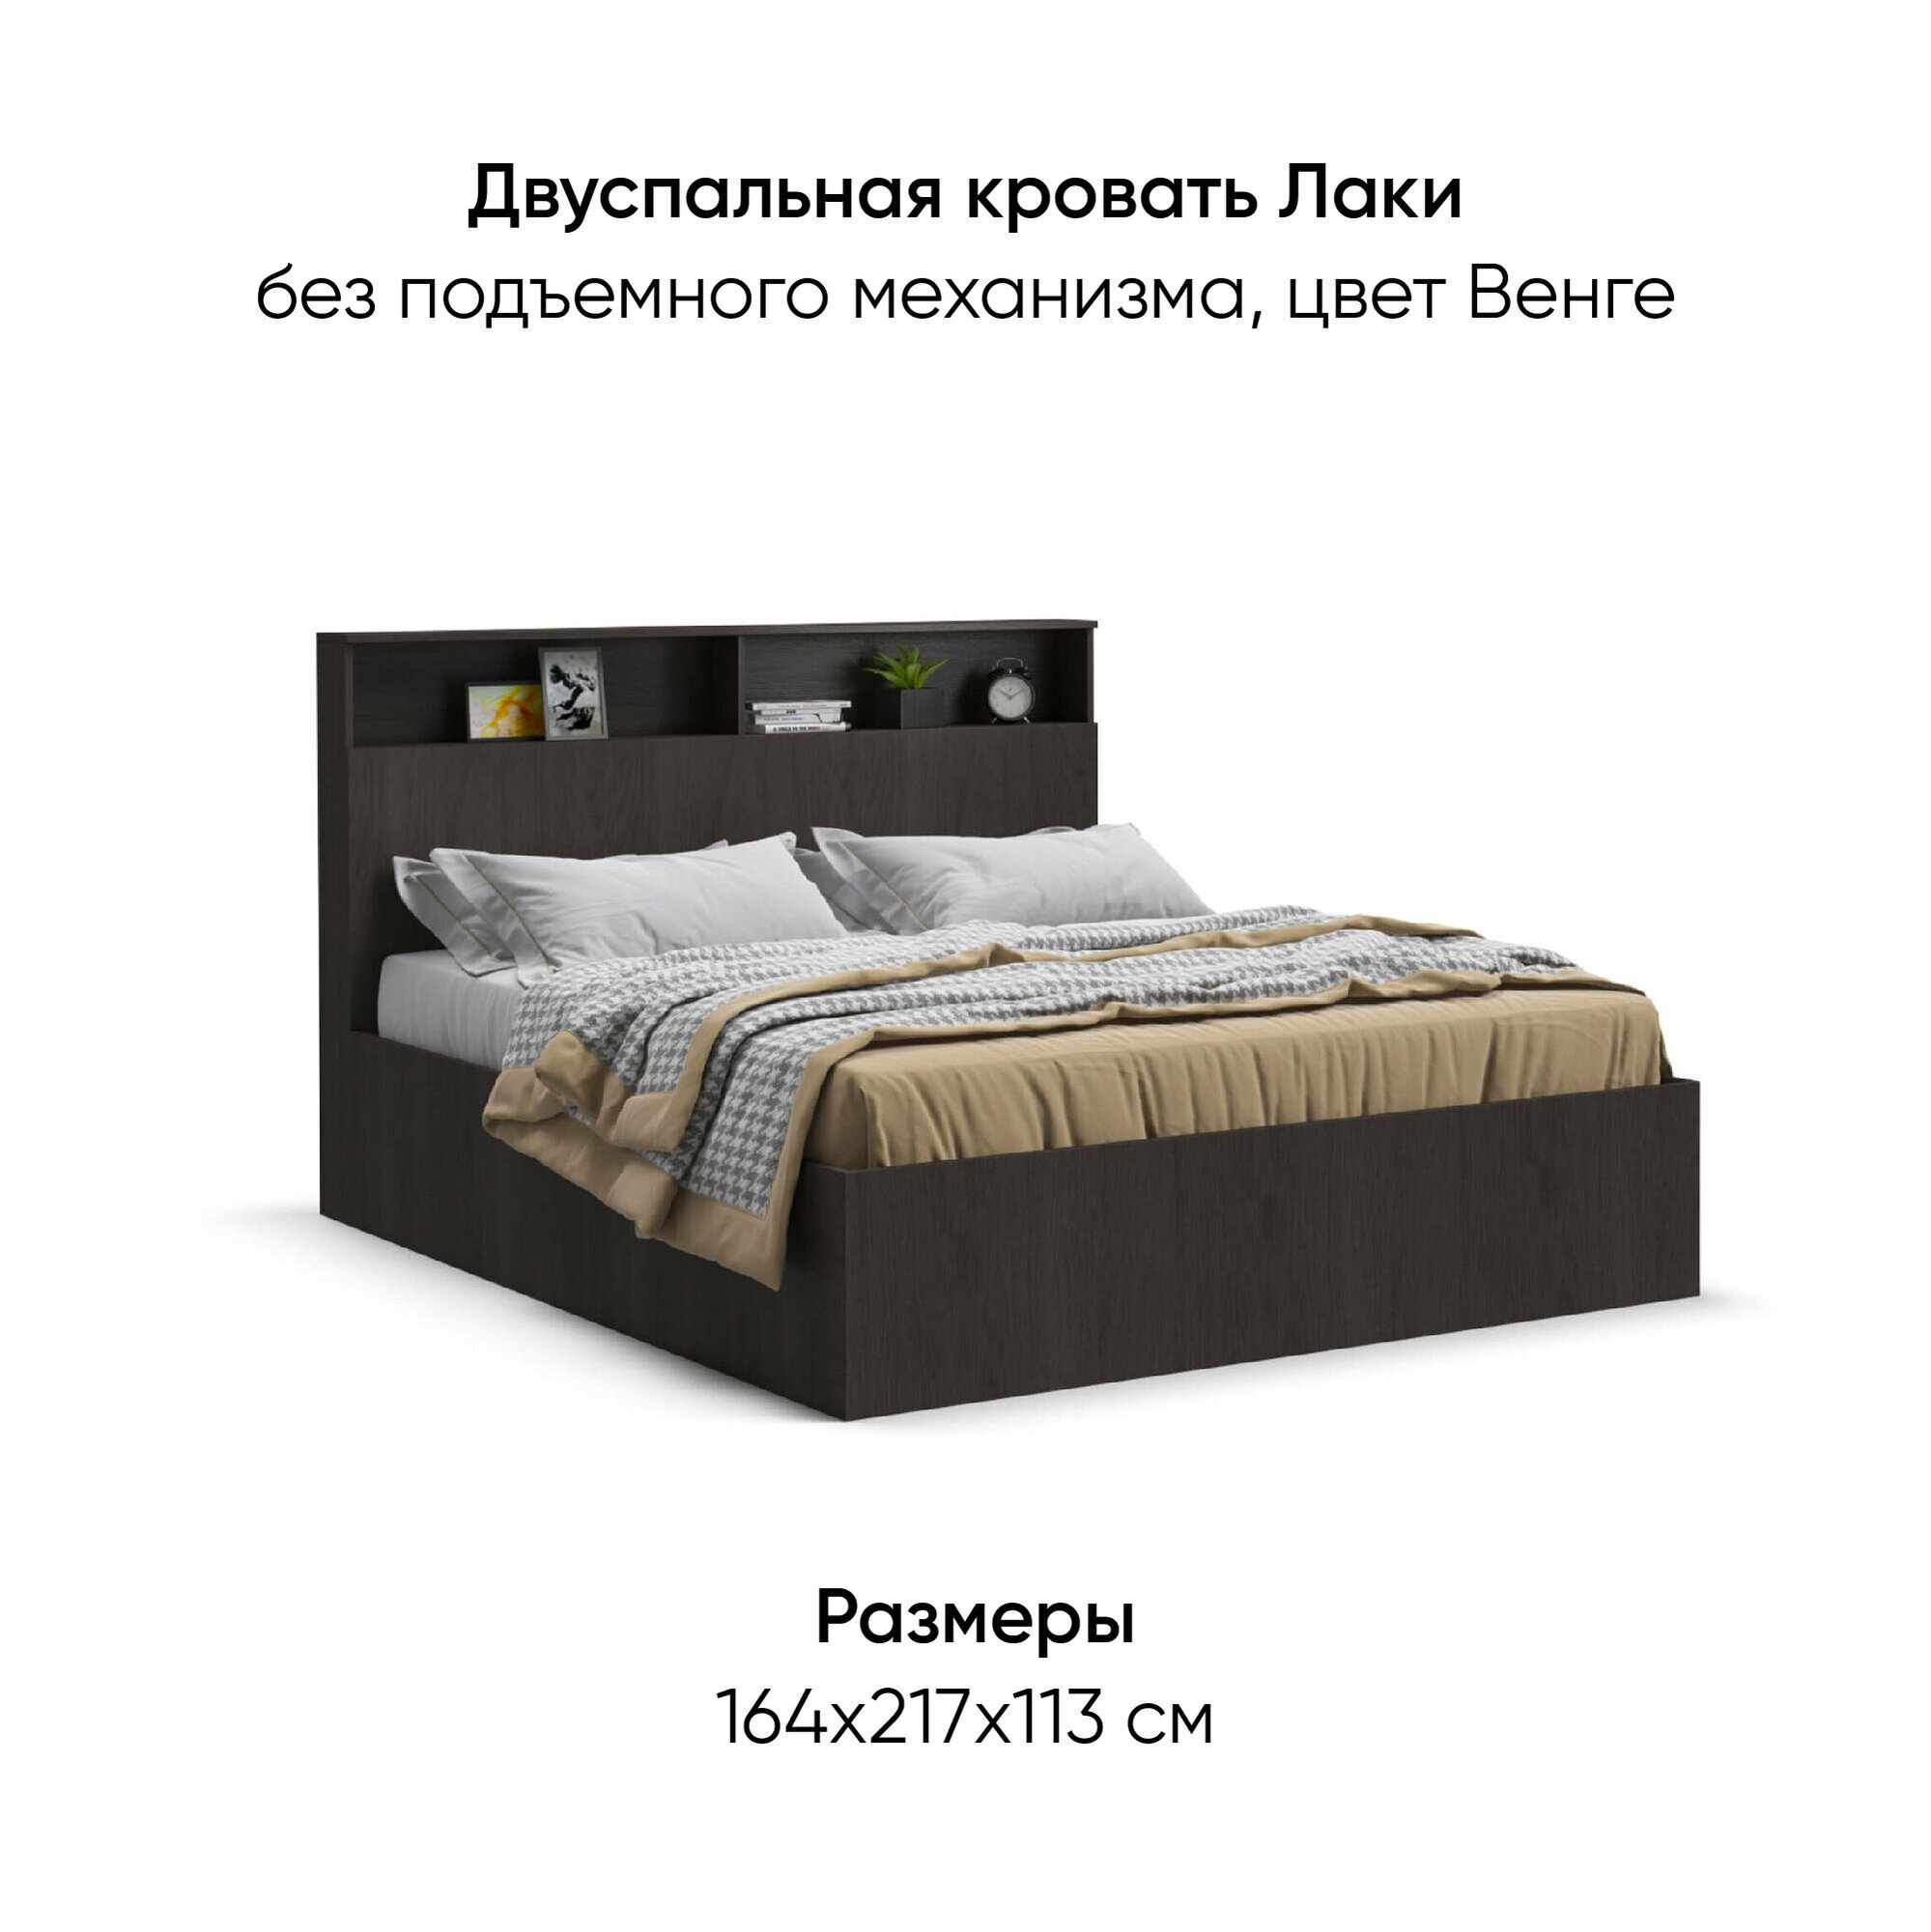 Двуспальная кровать Лаки, без подъемного механизма, с полками в изголовье, цвет венге, 160х200 см